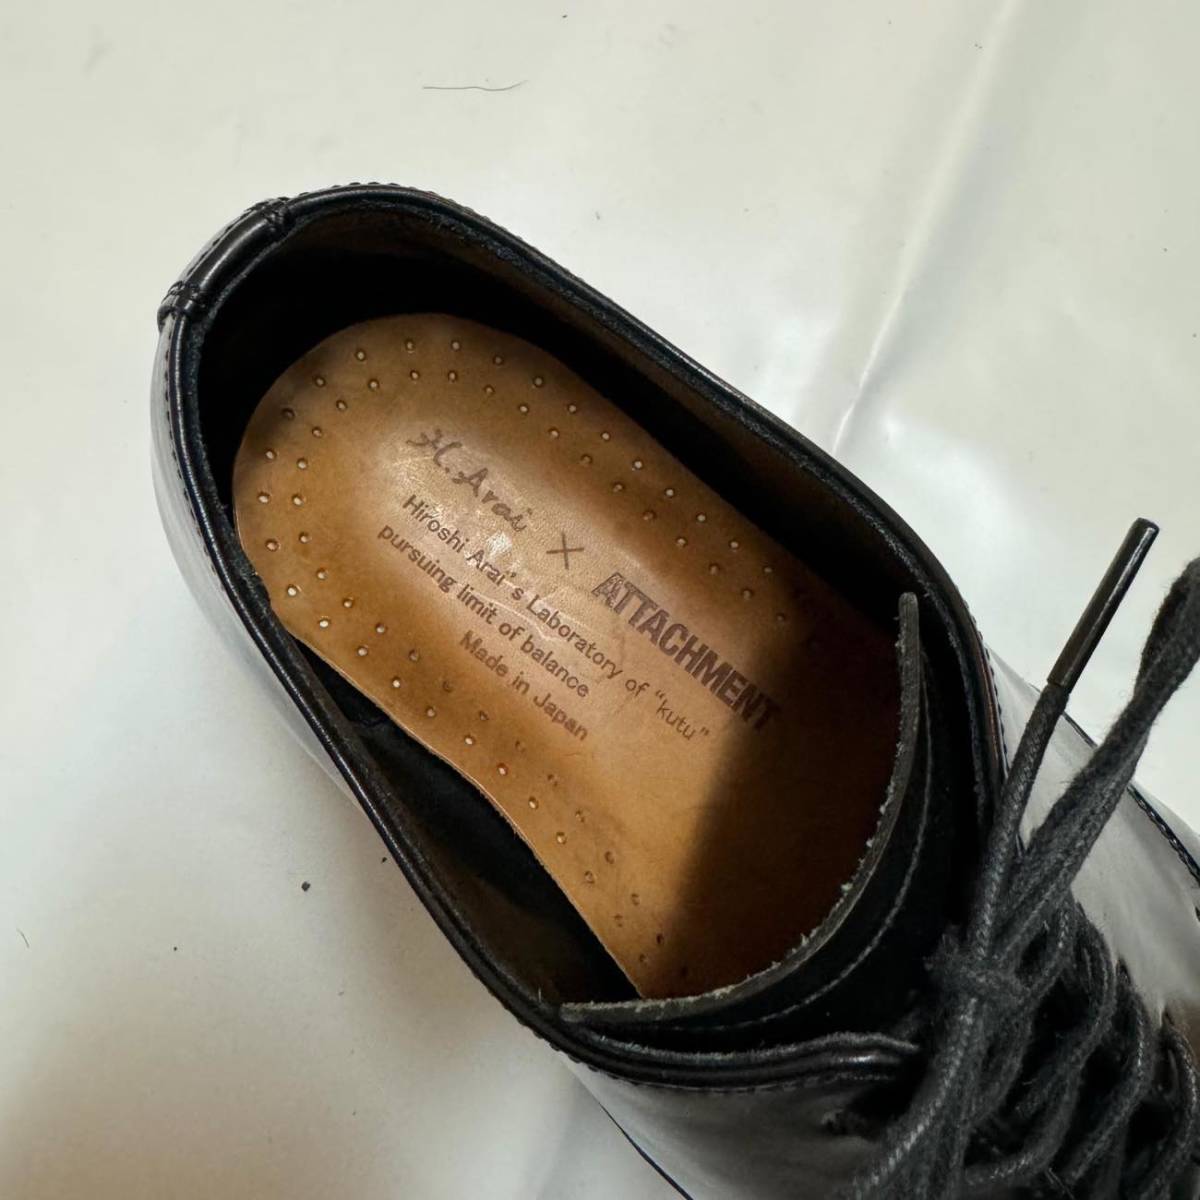 ATTACHMENT Attachment h.arai сотрудничество простой tu кожа обувь обычная цена 60,500 иен 7(25cm степень ) мужской короткий обувь kazyuki медведь gai... история 